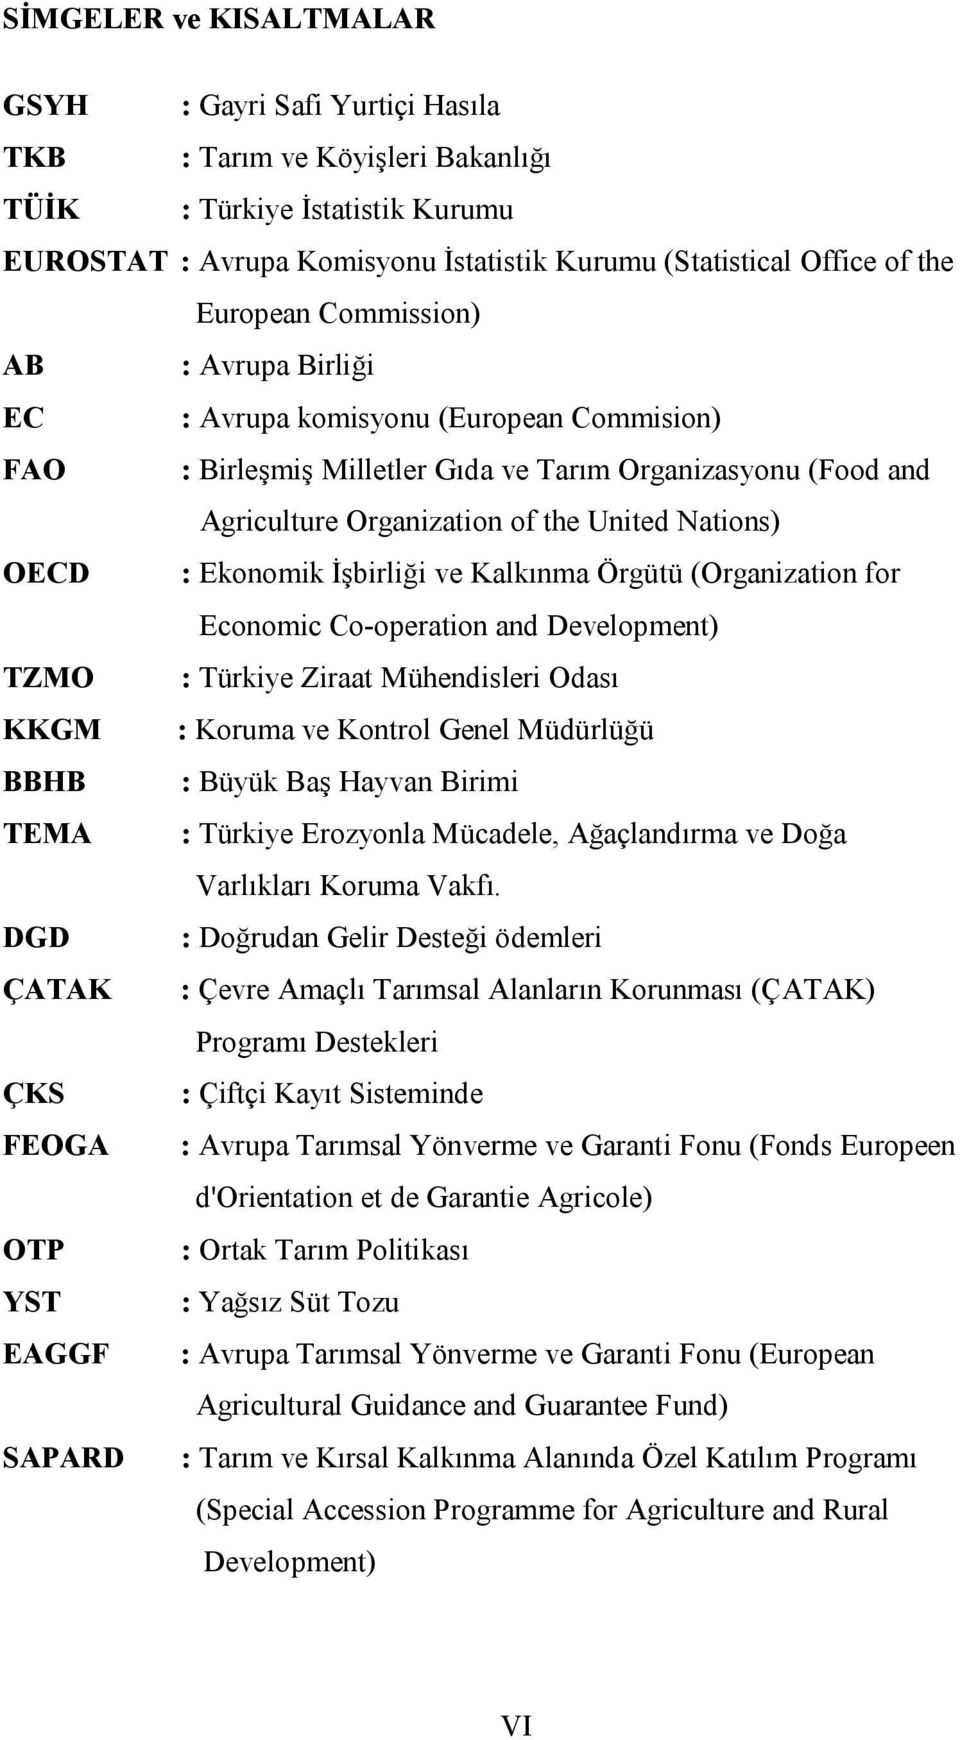 OECD : Ekonomik İşbirliği ve Kalkınma Örgütü (Organization for Economic Co-operation and Development) TZMO : Türkiye Ziraat Mühendisleri Odası KKGM : Koruma ve Kontrol Genel Müdürlüğü BBHB : Büyük